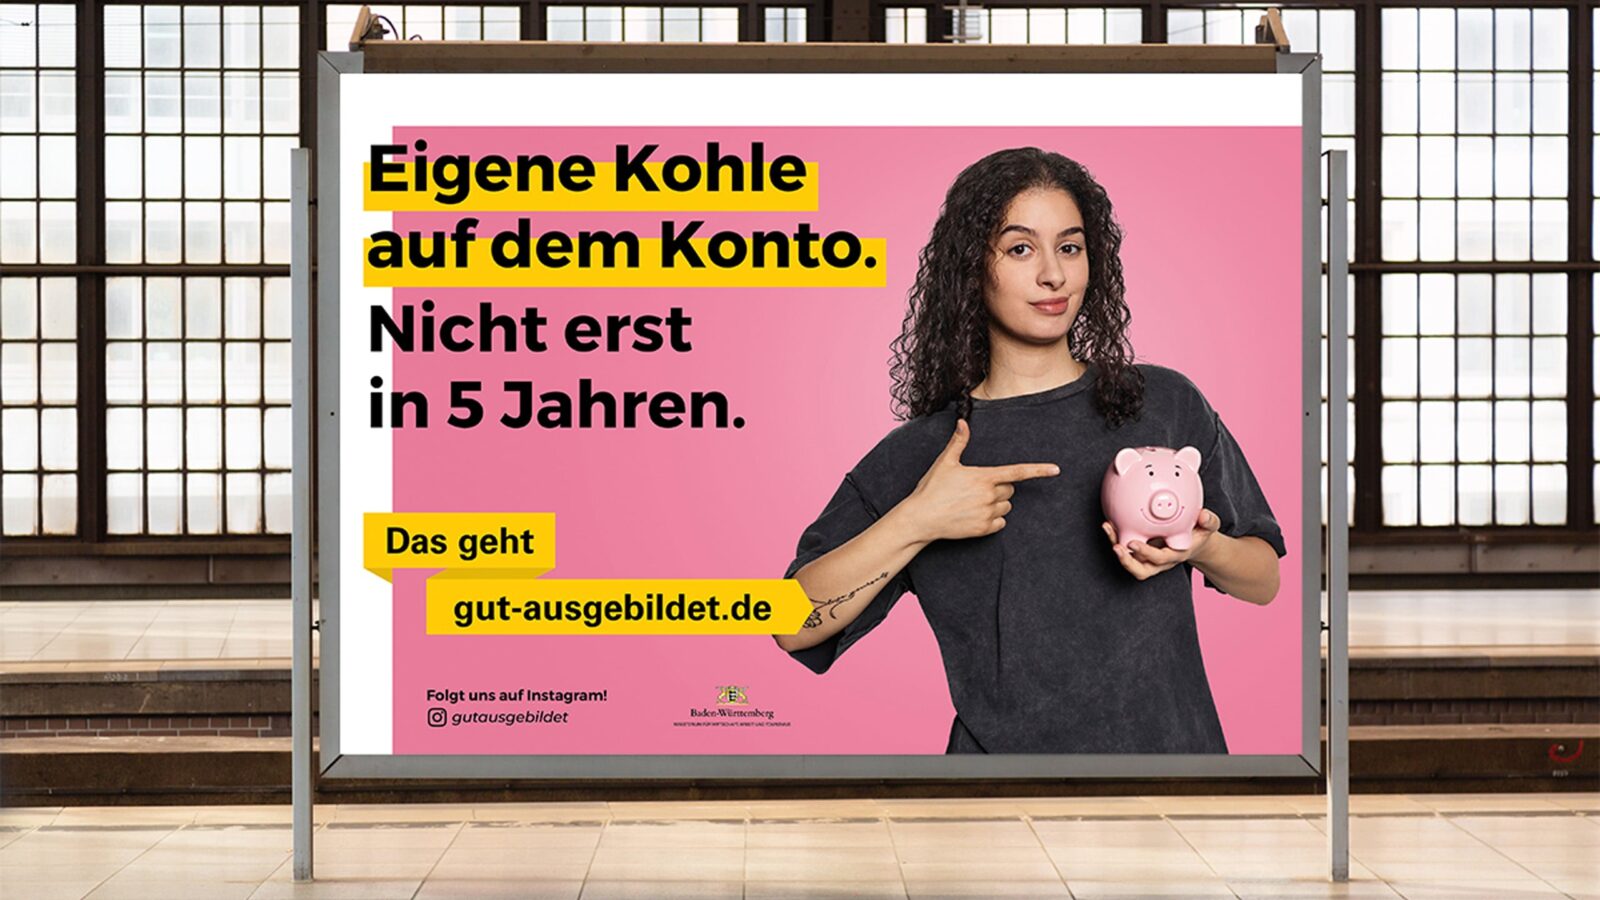 Plakat zeigt „gut ausgebildet” Werbung mit dem Schriftzug: „Eigene Kohle auf dem Konto. Nicht erst in 5 Jahren.” Daneben ist eine Frau die auf ein Sparschwein zeigt.